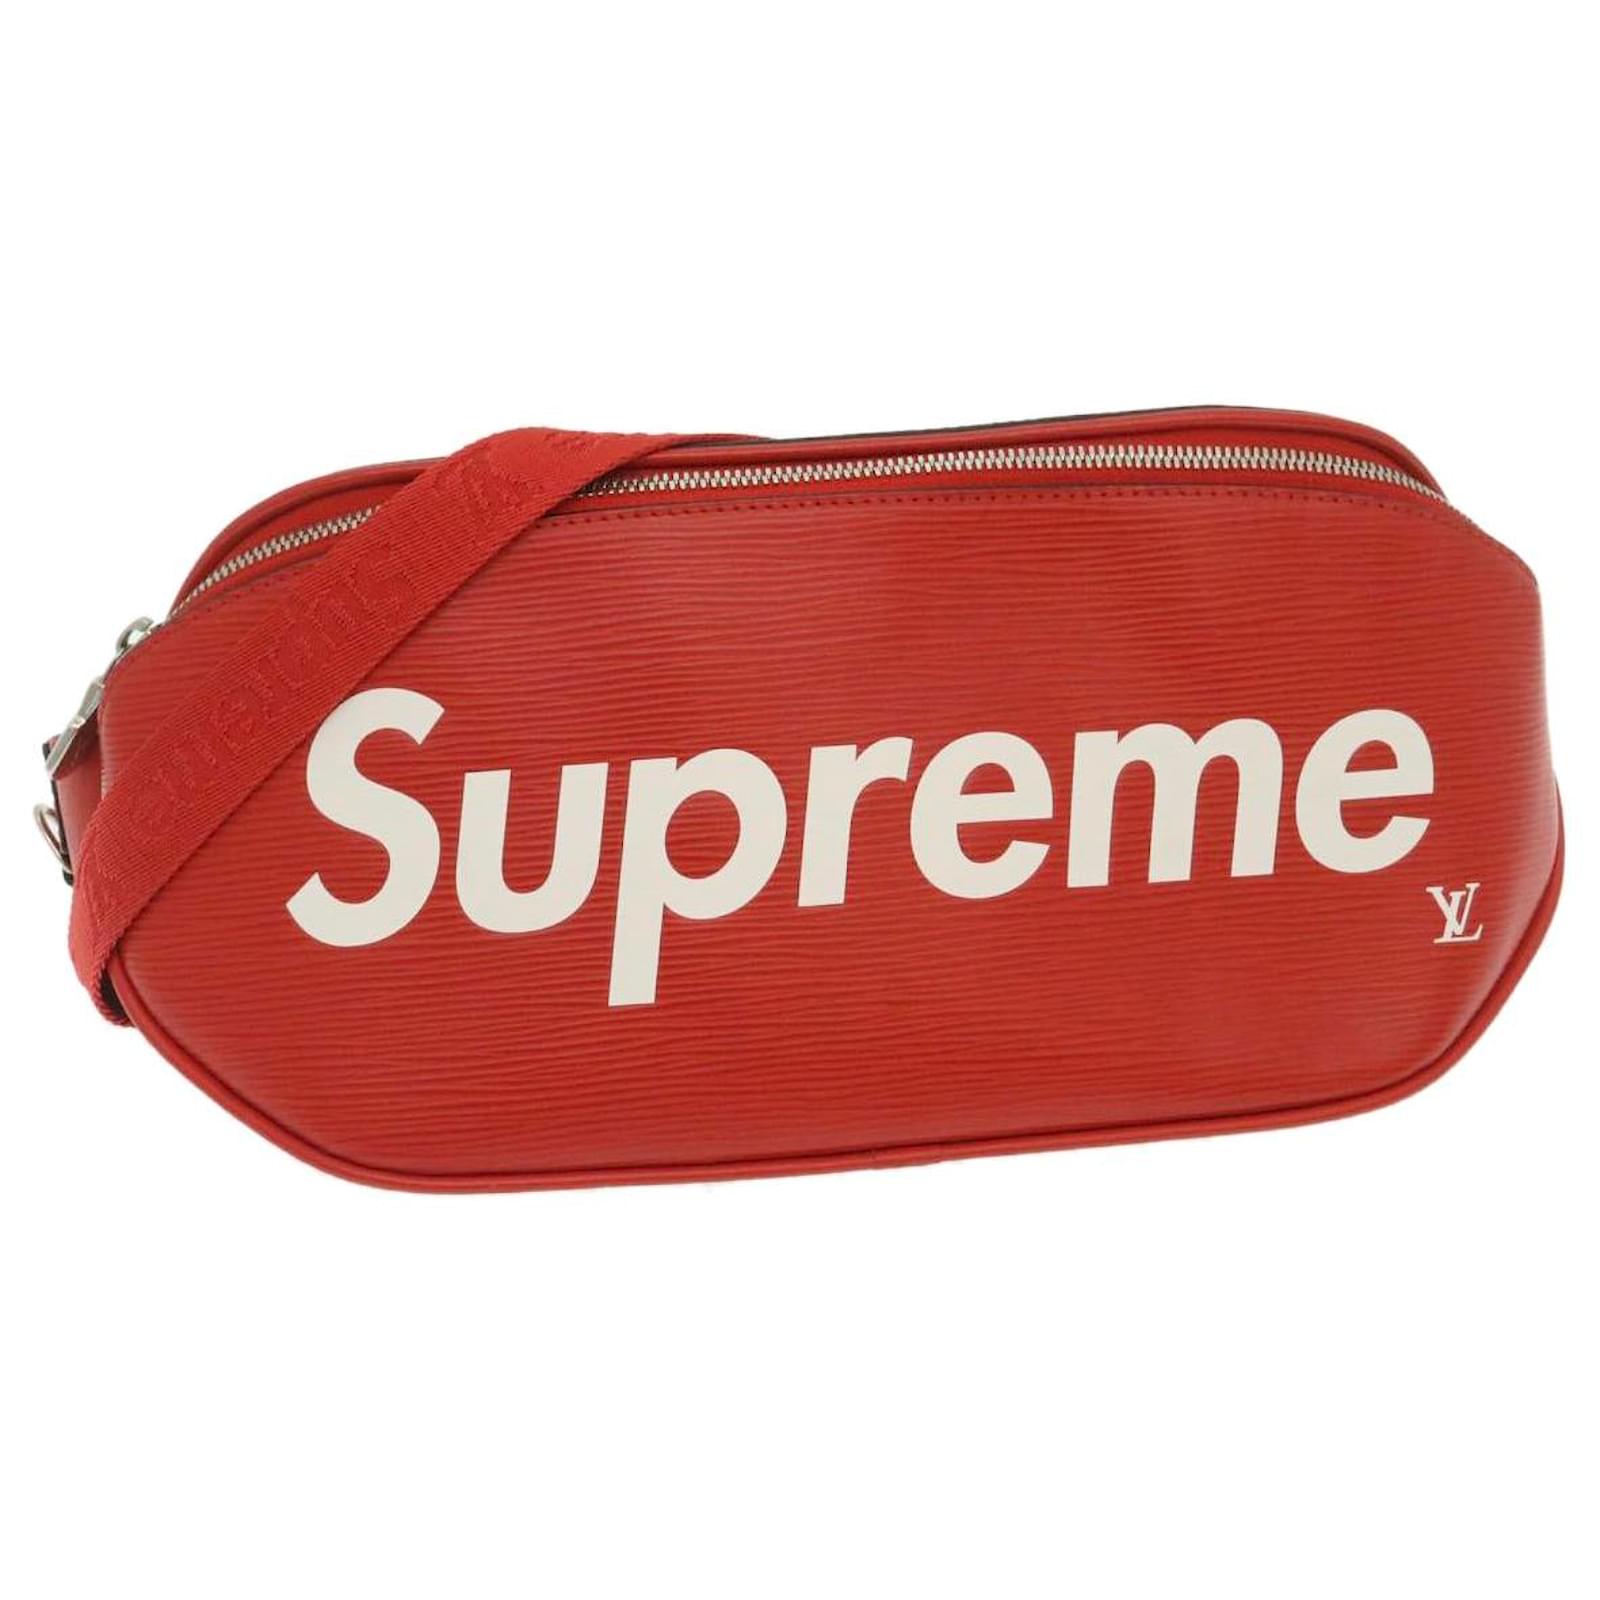 red lv supreme bag